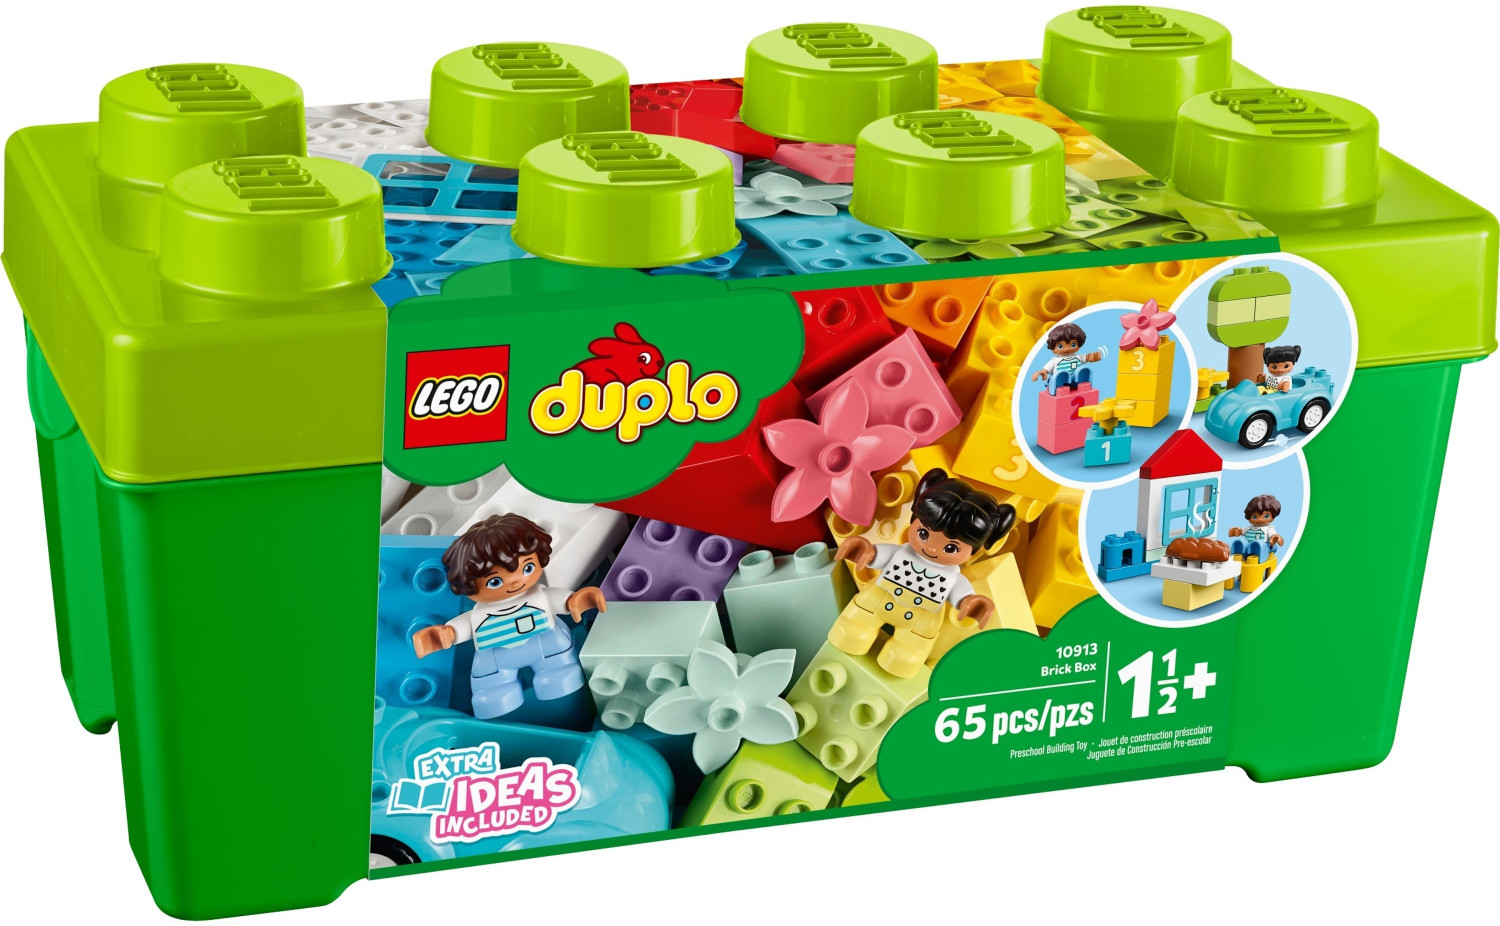 LEGO DUPLO La boîte de briques deluxe 10914 LEGO : la boîte à Prix